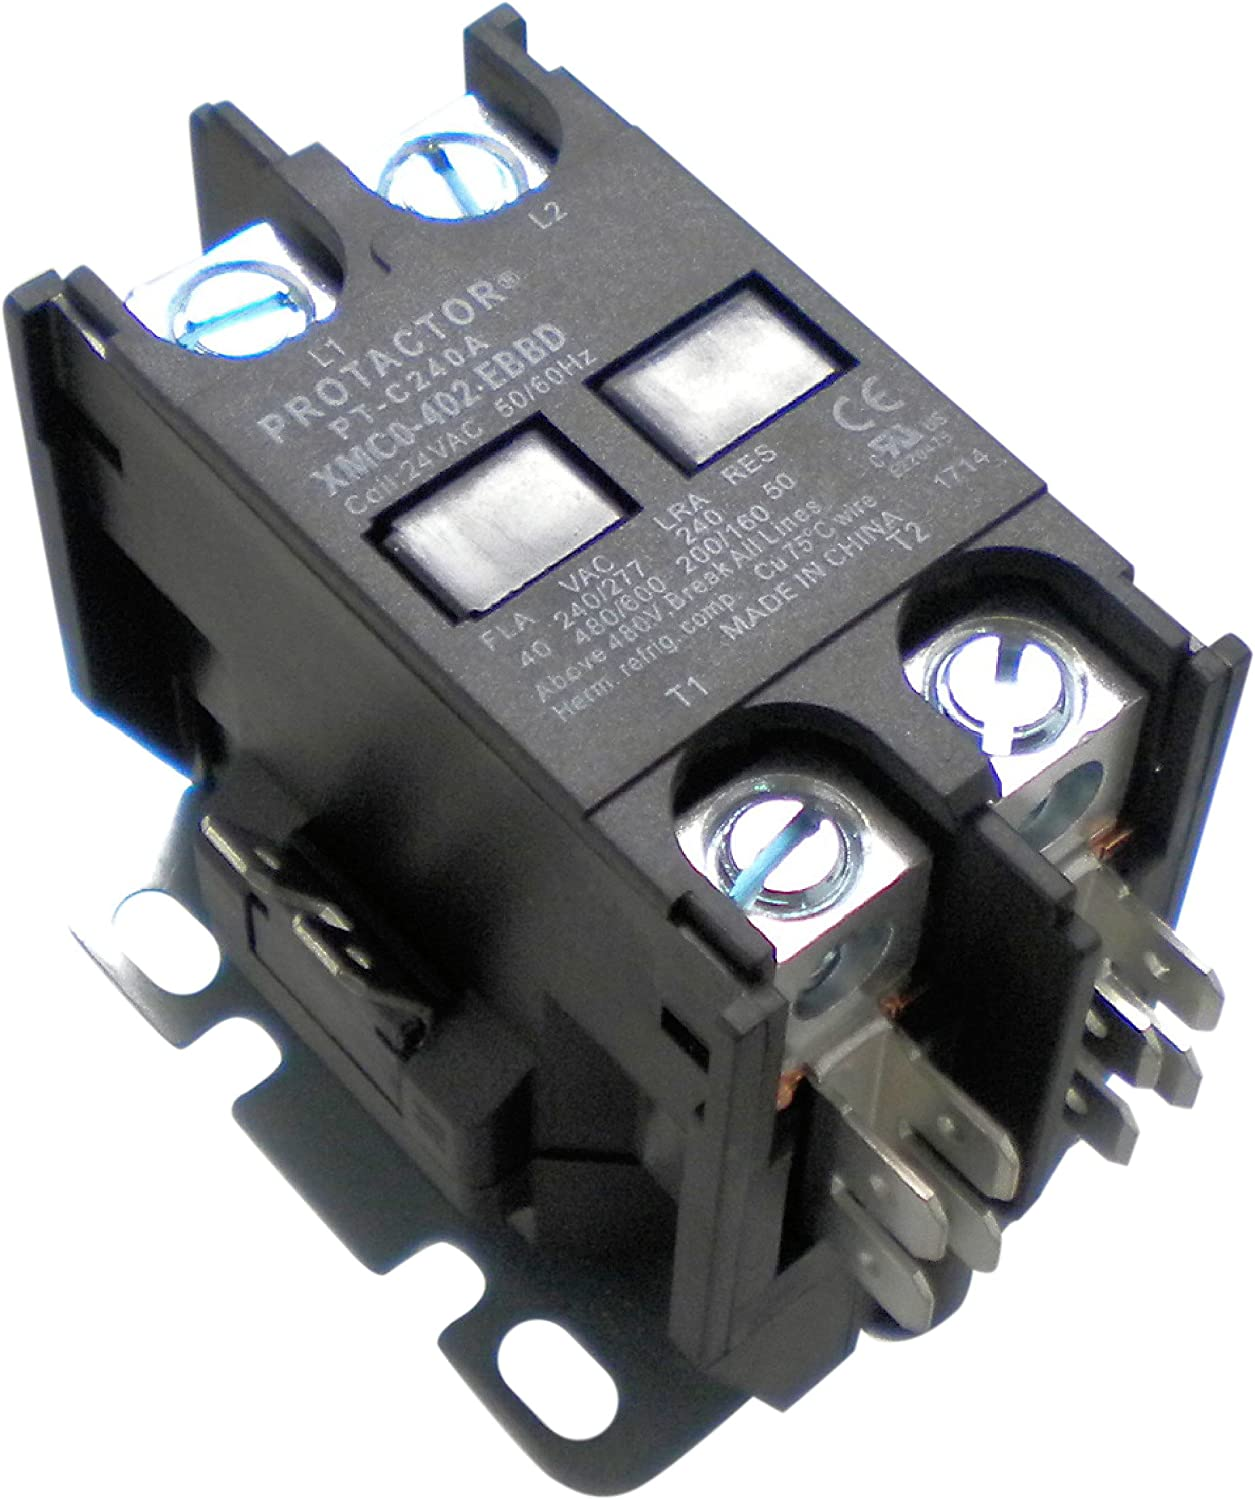 El contactor de CA de alta resistencia Protactor 2 polos 40 AMP